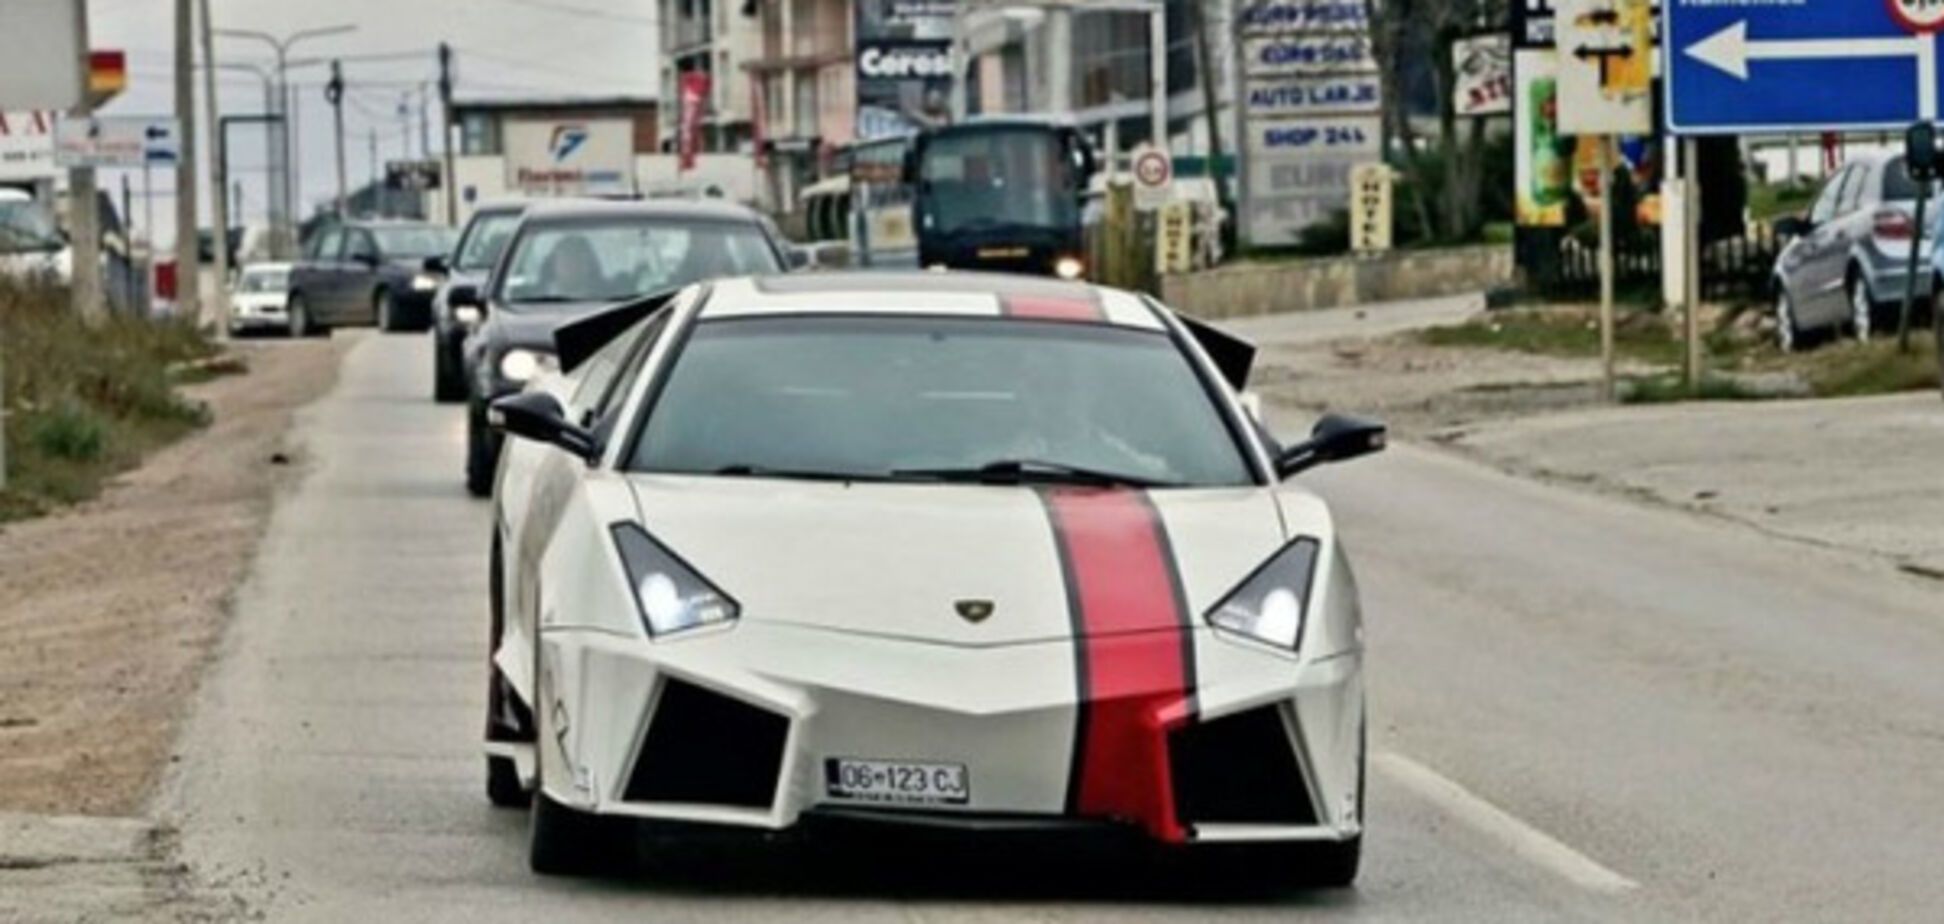 Копия Lamborghini Reventon из Косово